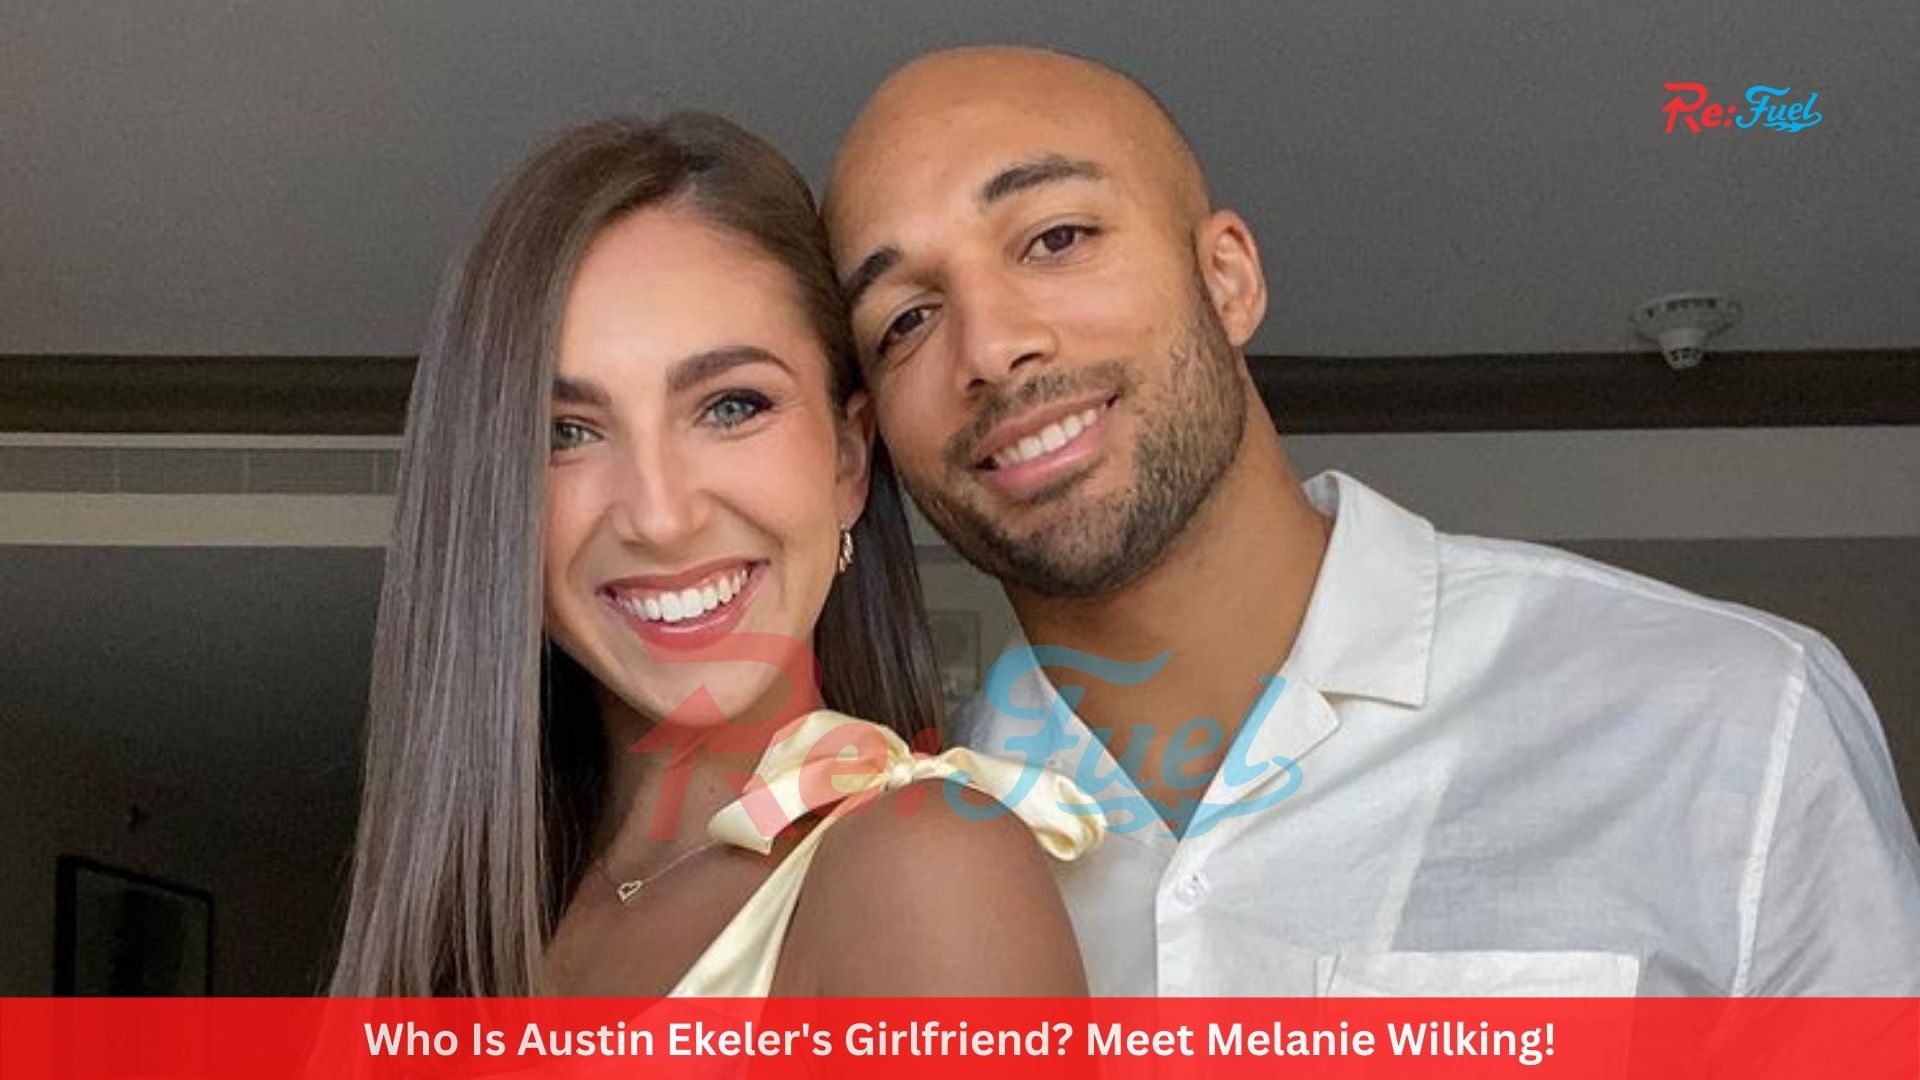 Who Is Austin Ekeler's Girlfriend? Meet Melanie Wilking!